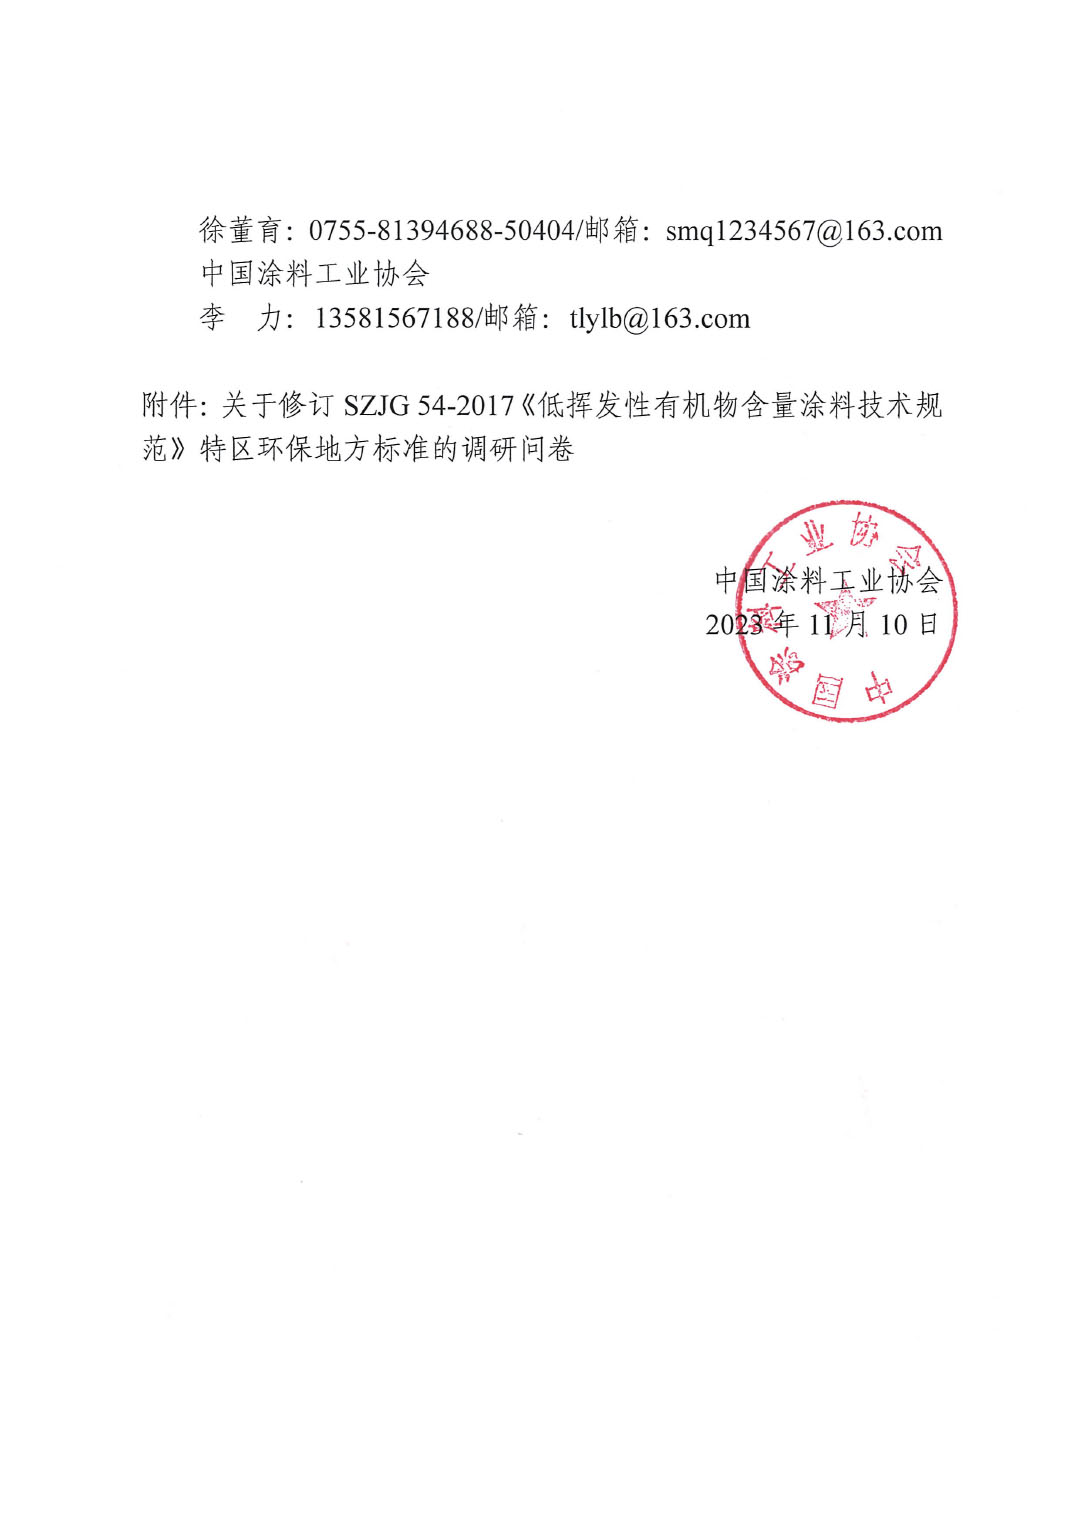 关于对修订SZJG 54-2017《低挥发性有机物含量涂料技术规范》深圳地方标准进行调研的通知-2